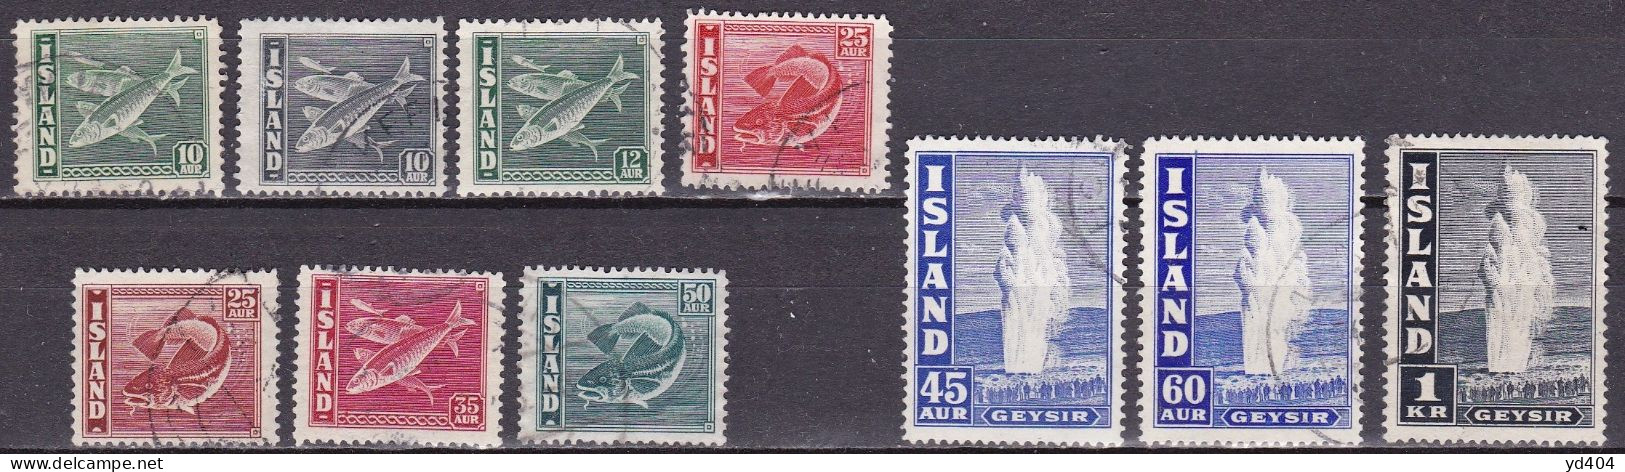 IS042 – ISLANDE – ICELAND – 1940-45 – FISHES & GEYSER – Y&T # 189/198a USED - Gebraucht